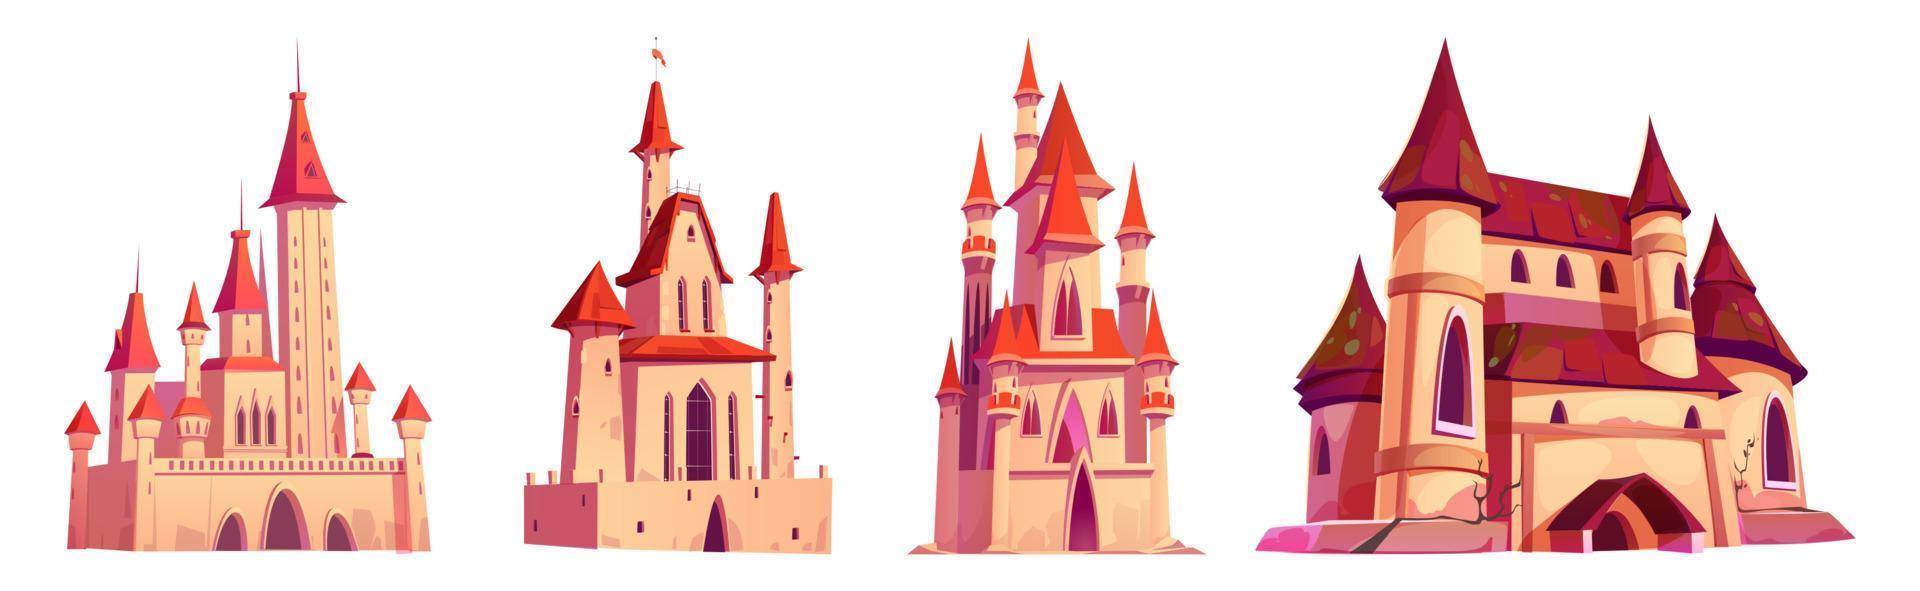 castillos medievales, palacios con torres y banderas vector